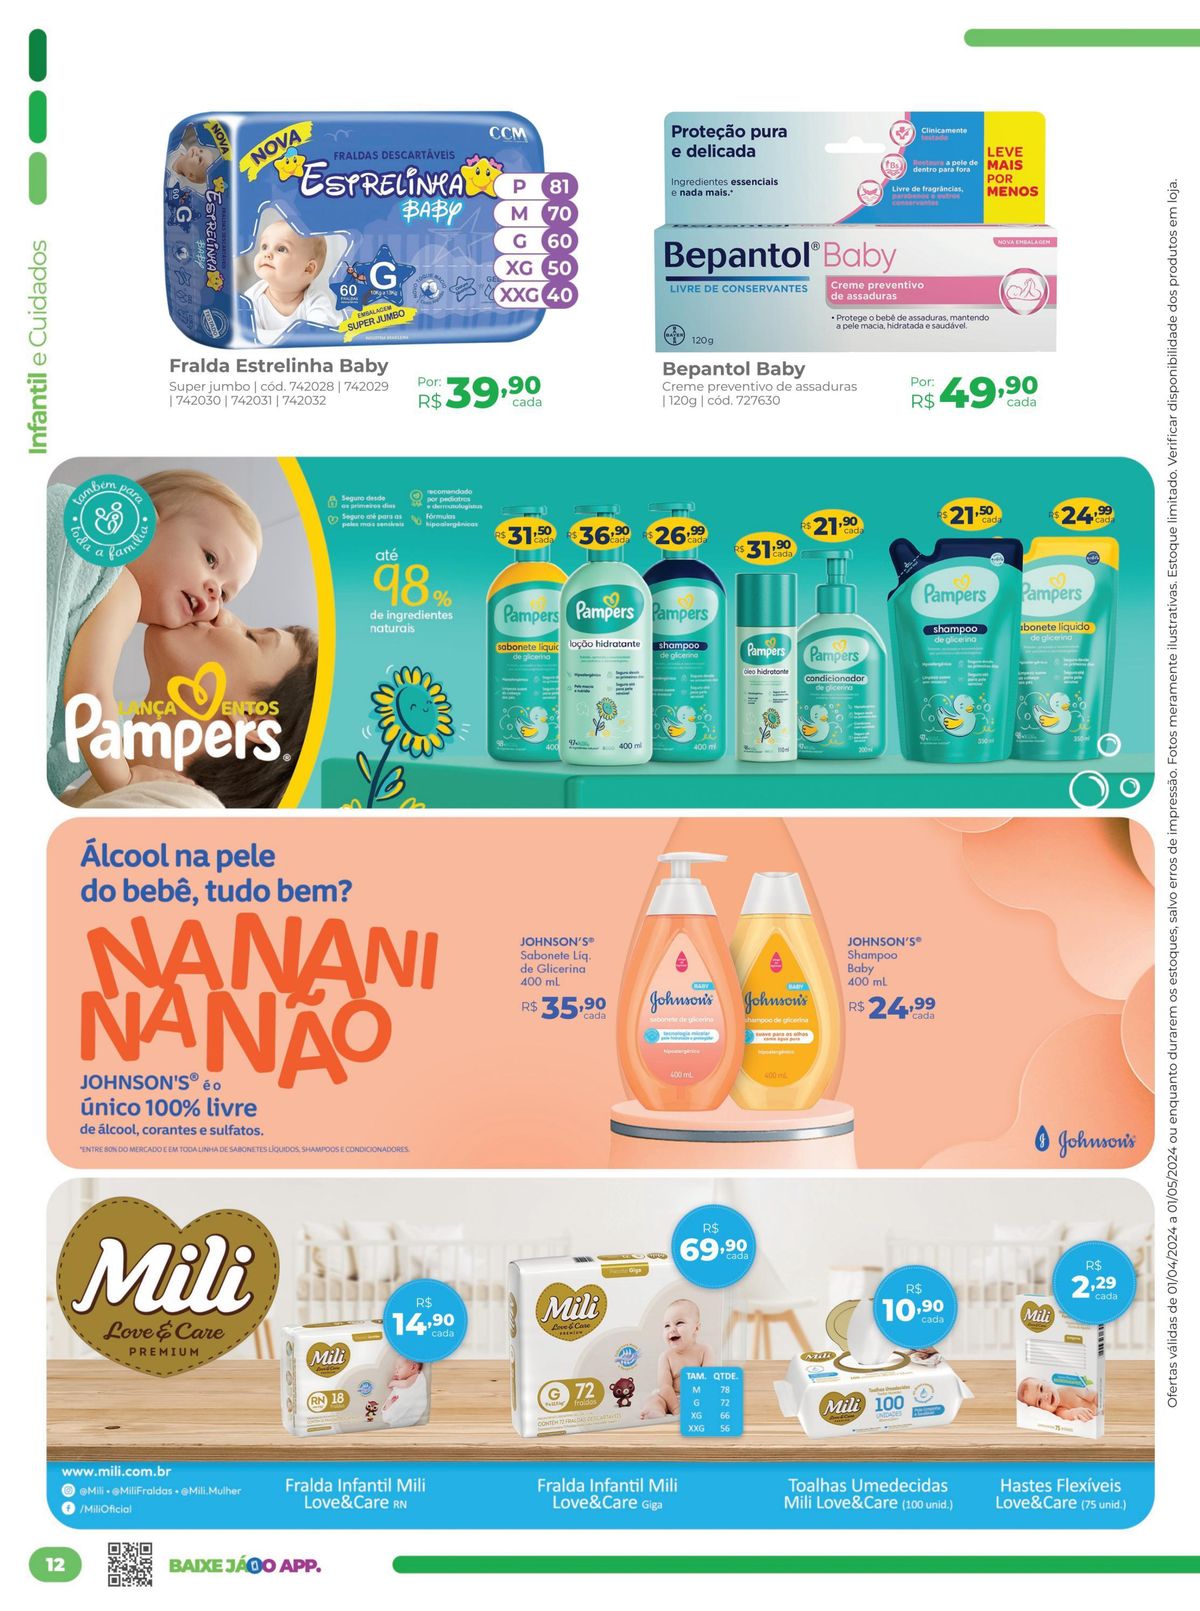 Promoção Bepantol Baby e produtos Johnson's para bebês